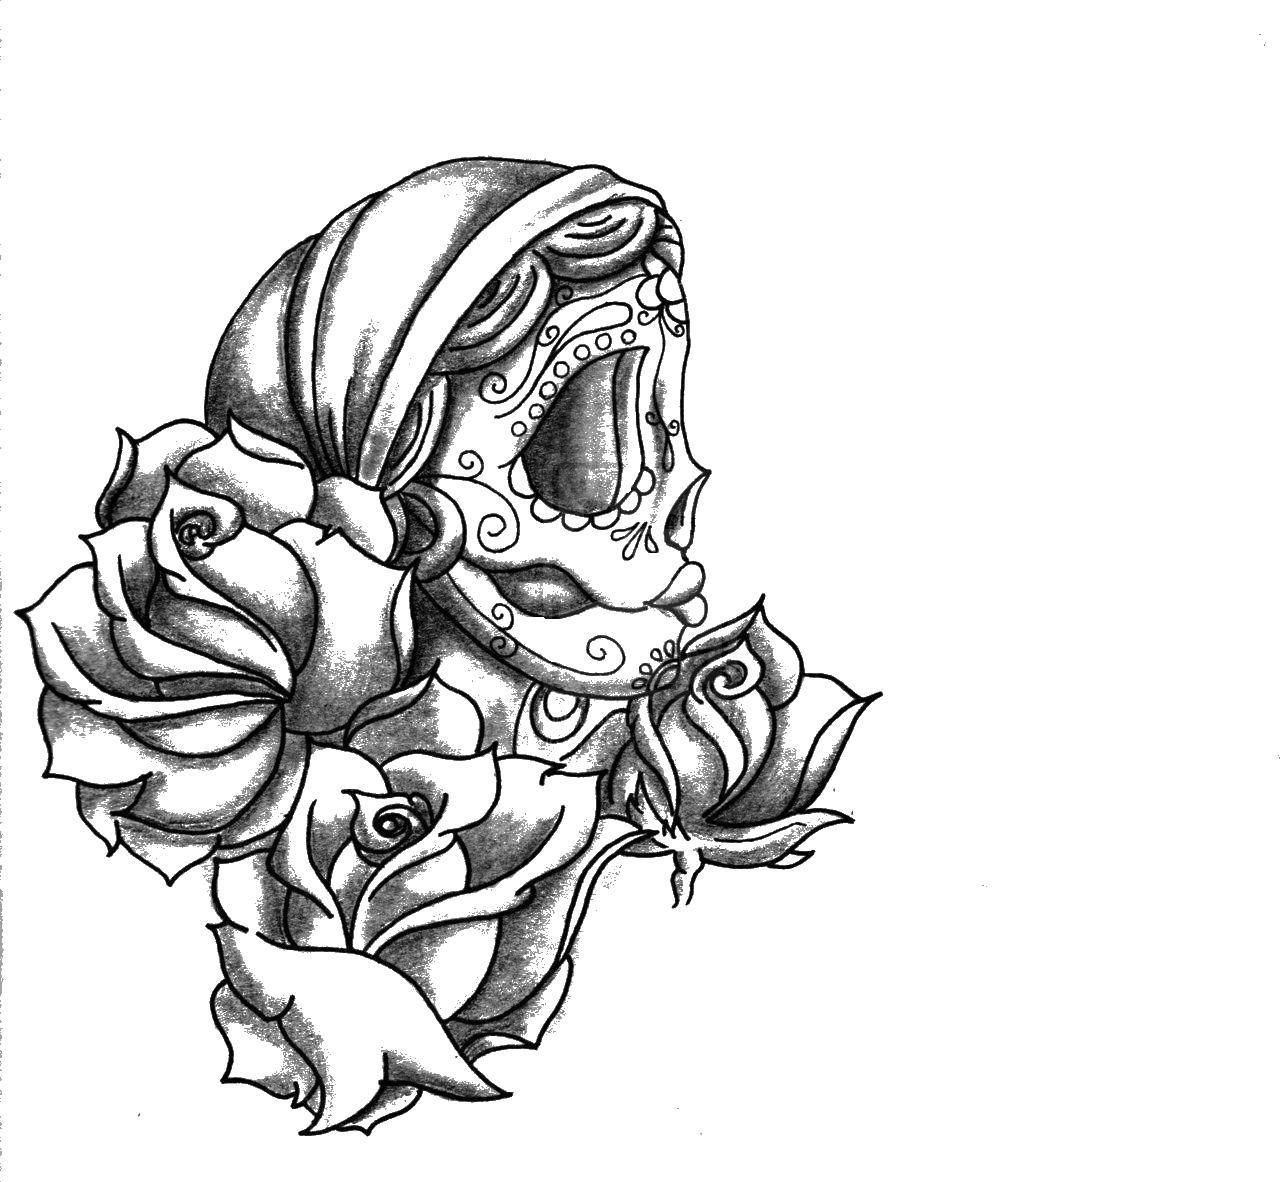 Coloring Rose skull. Category Skull. Tags:  skull, rose.